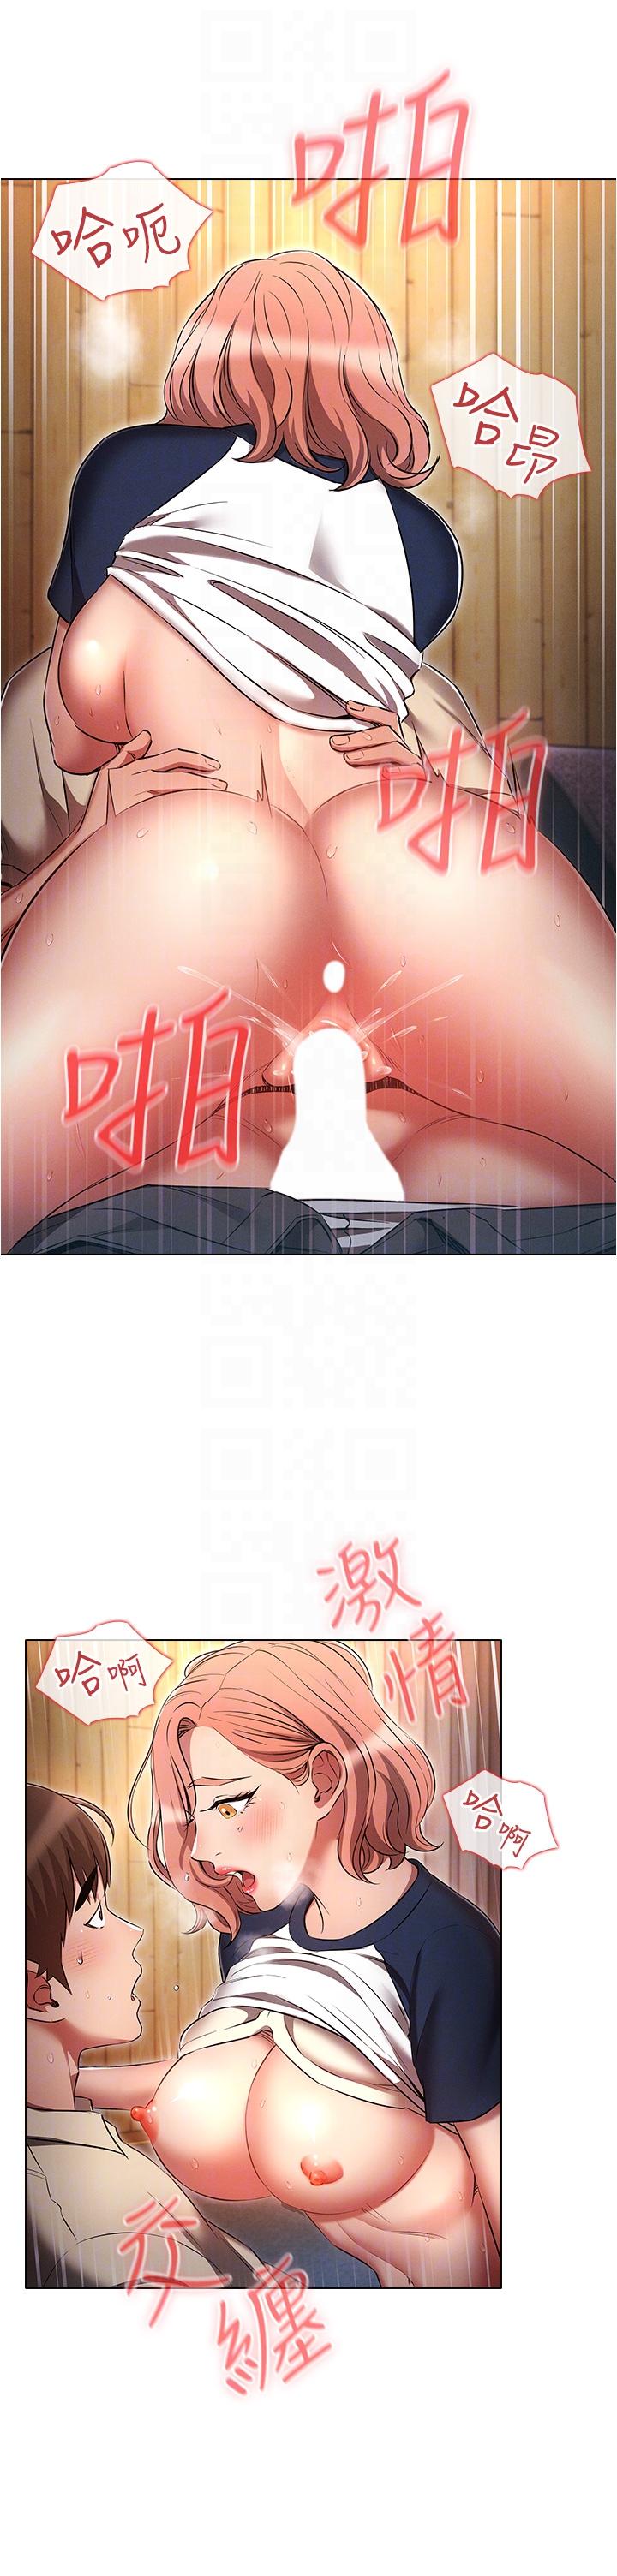 韩国污漫画 魯蛇的多重宇宙 第43话-被彻底激发的变态属性 33